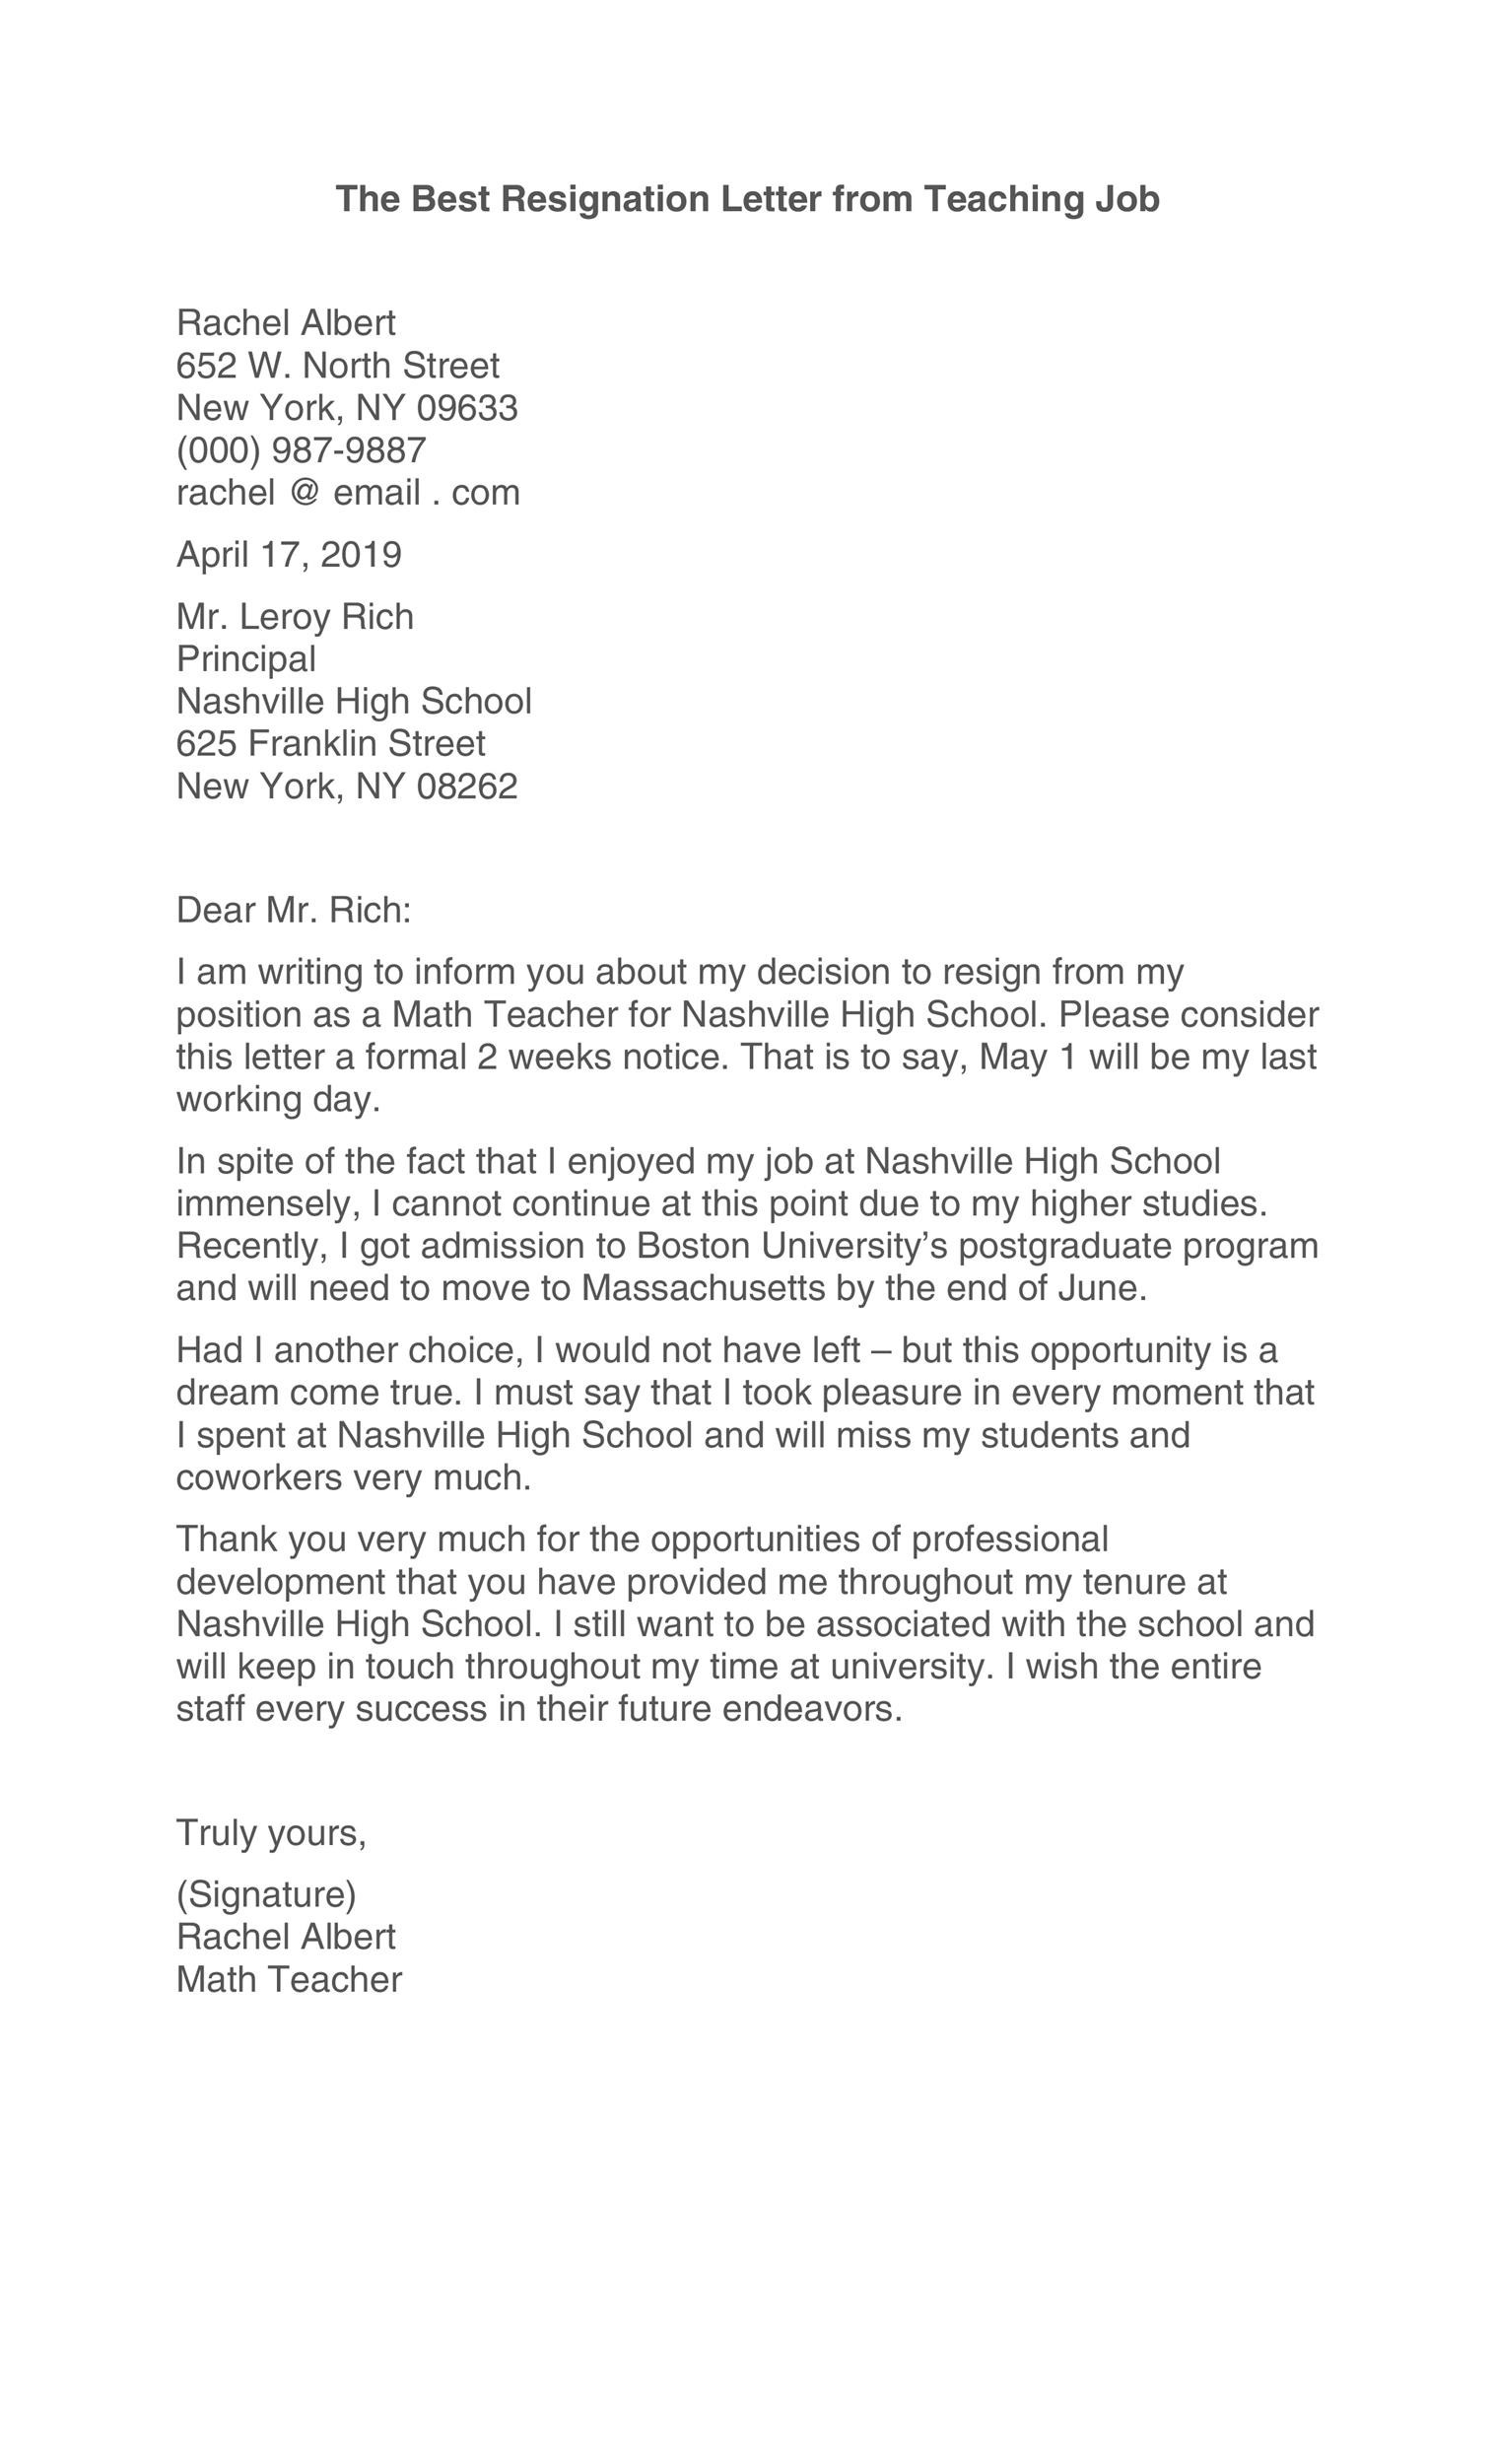 Free teacher resignation letter 21